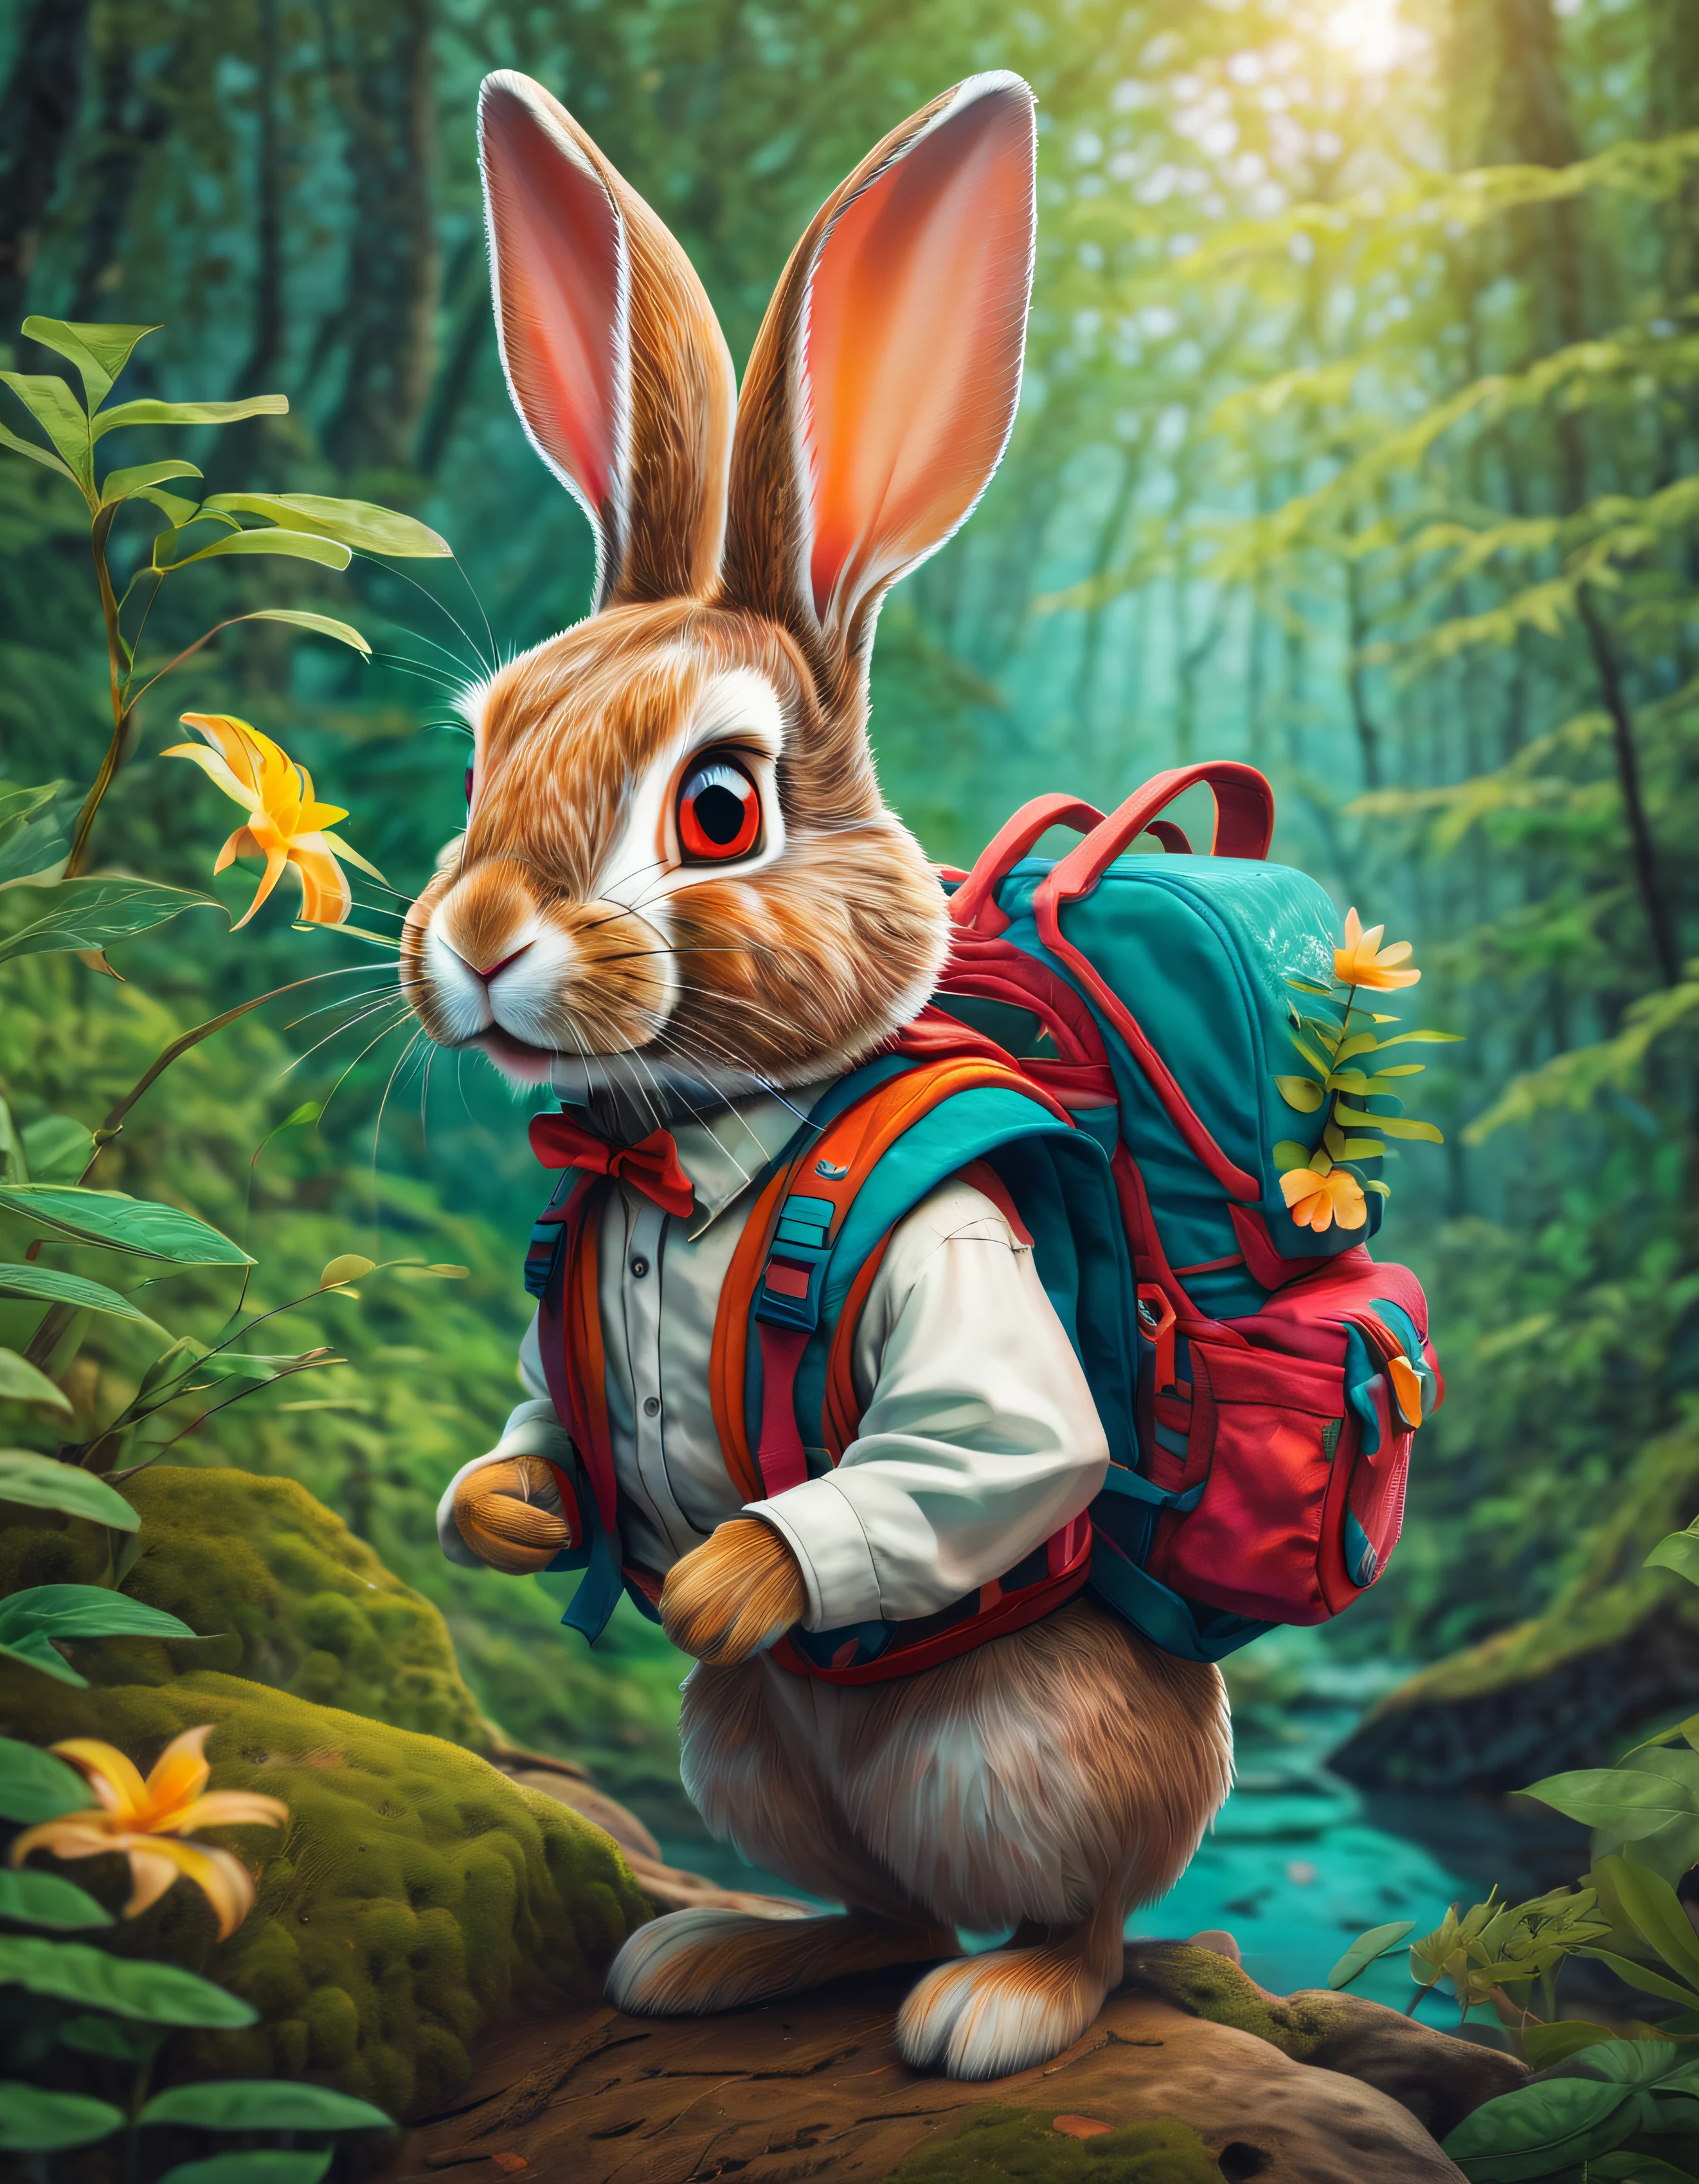 一只爱冒险的兔子，配有背包和双筒望远镜, 探索多样化的自然栖息地. 这幅作品展现了兔子对大自然的好奇心和热爱, 因为它沉浸在不同的生态系统中. 鲜艳的色彩和复杂的细节的使用增加了艺术品的深度和视觉趣味, 唤起对自然世界之美的敬畏和欣赏. 由著名数字艺术家 James Gurney 创作